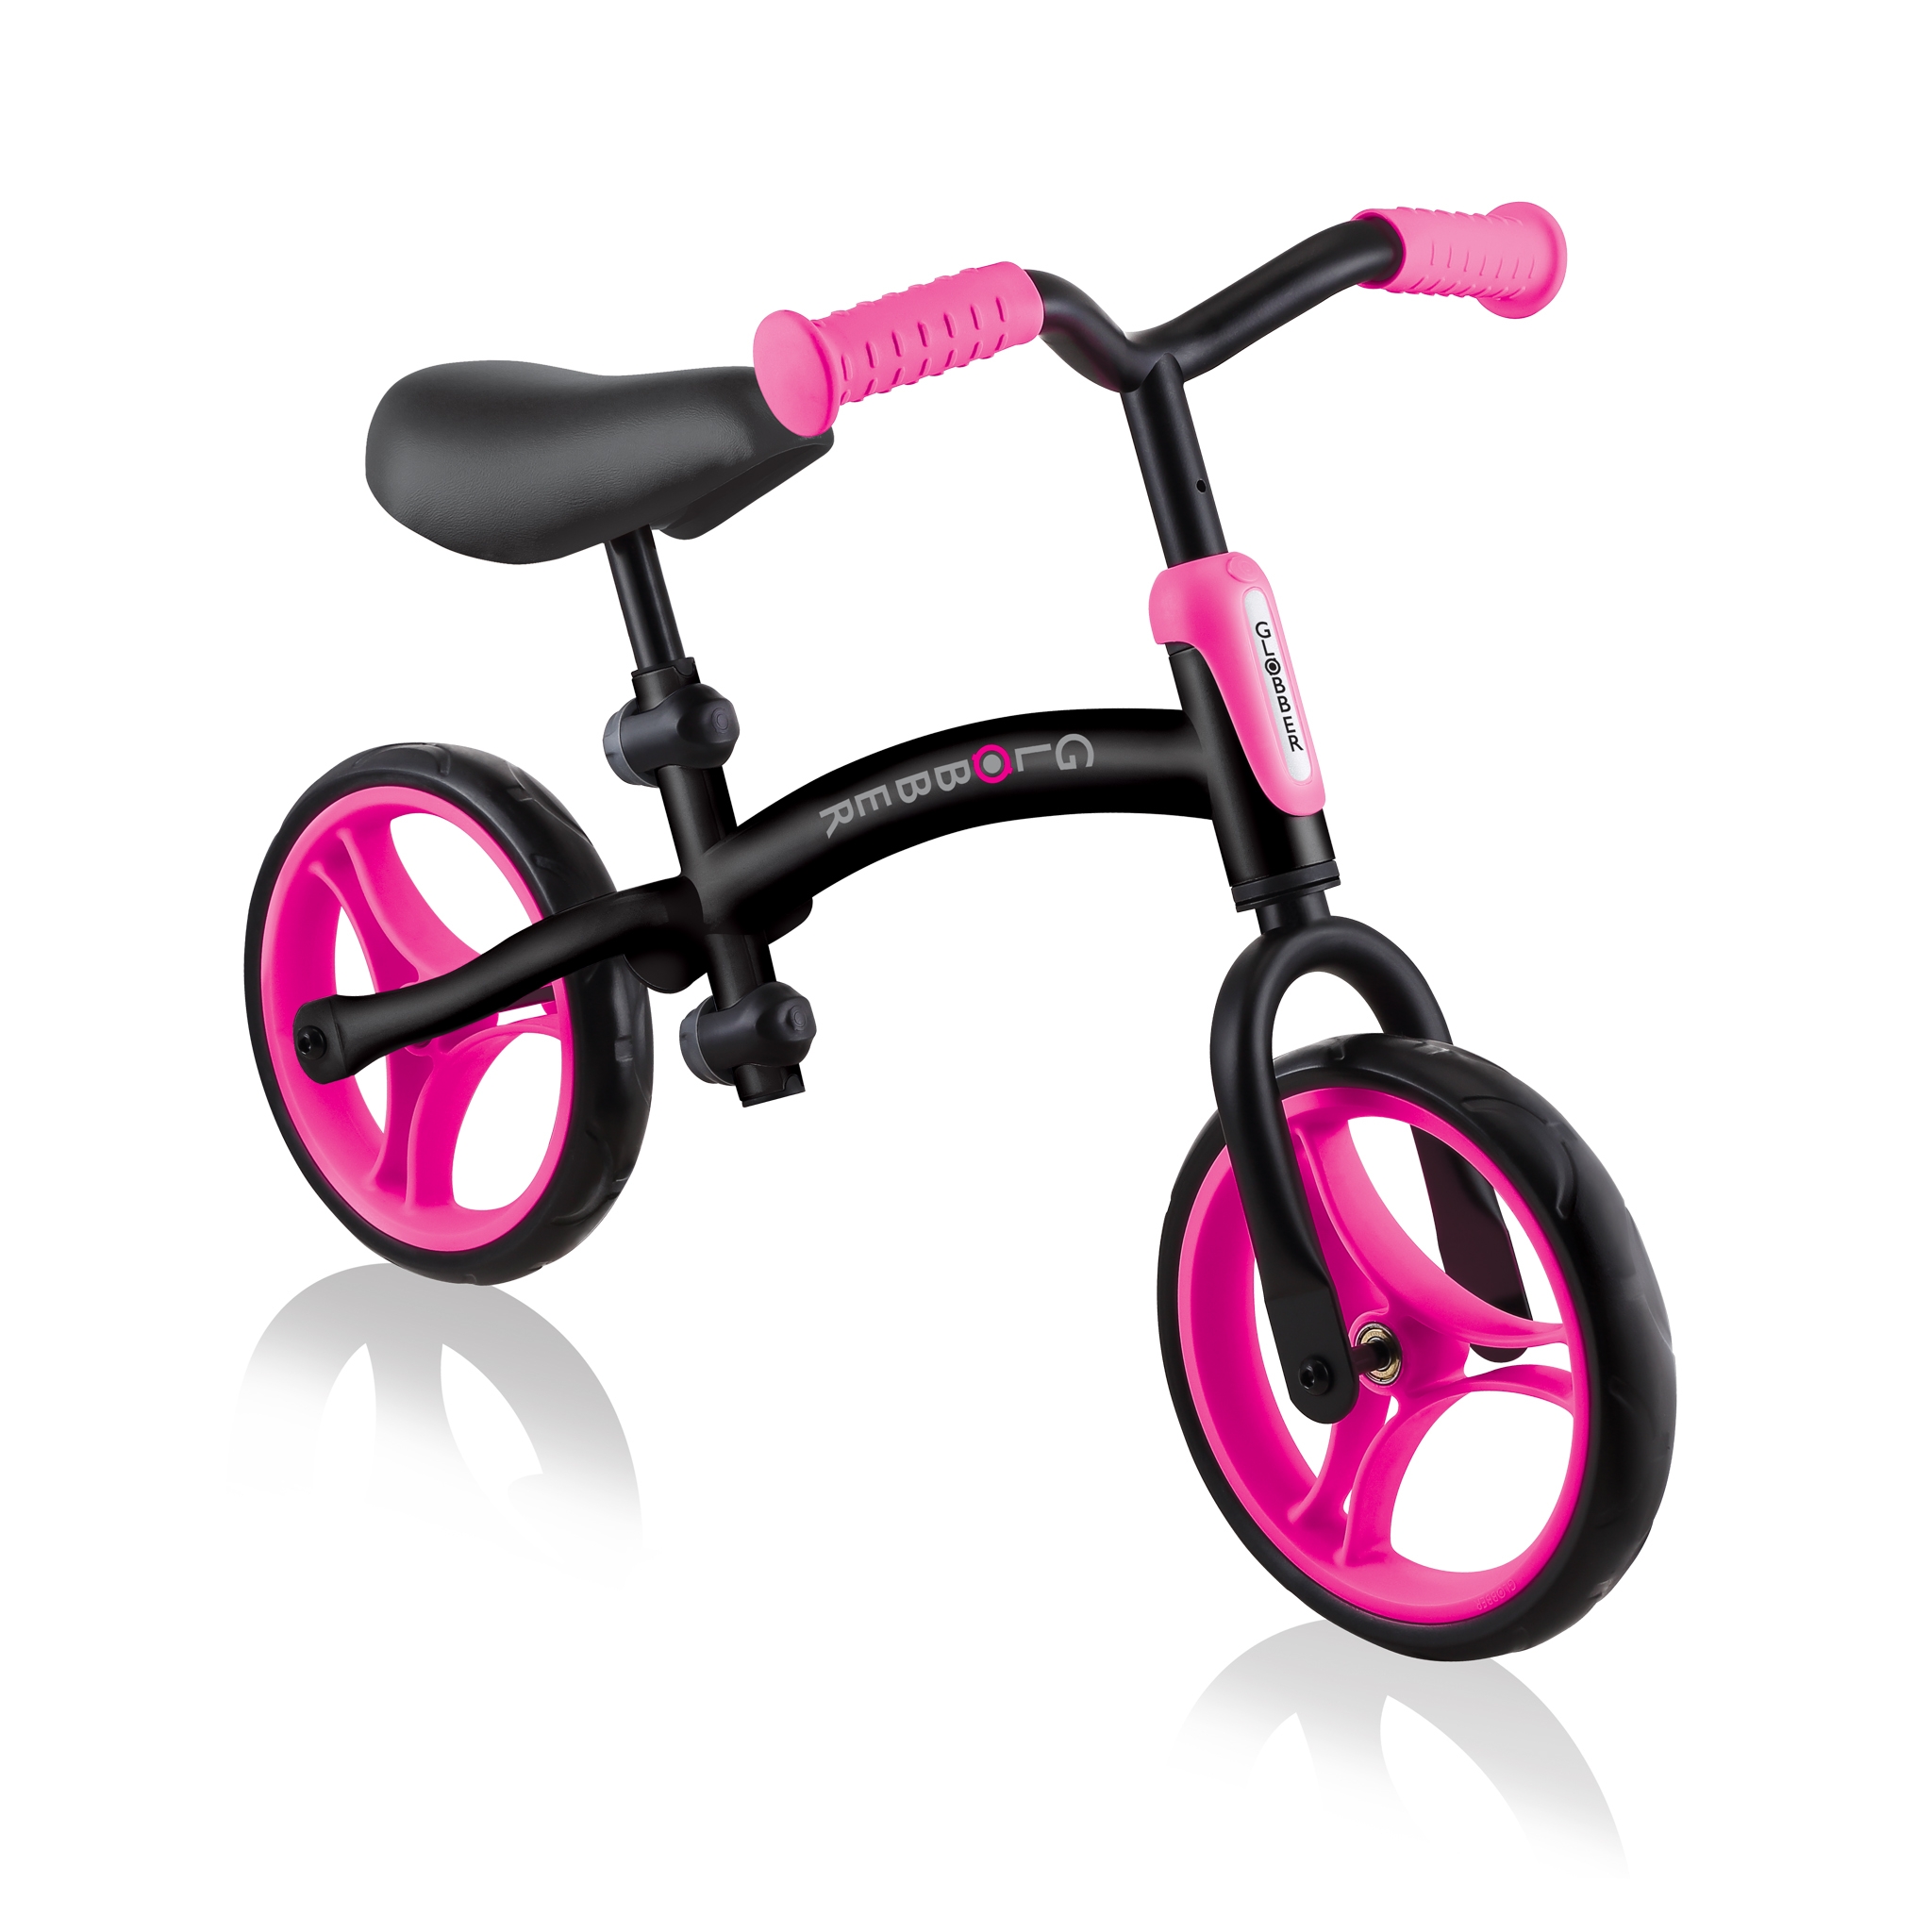 GO-BIKE-durable-baby-balance-bike 1